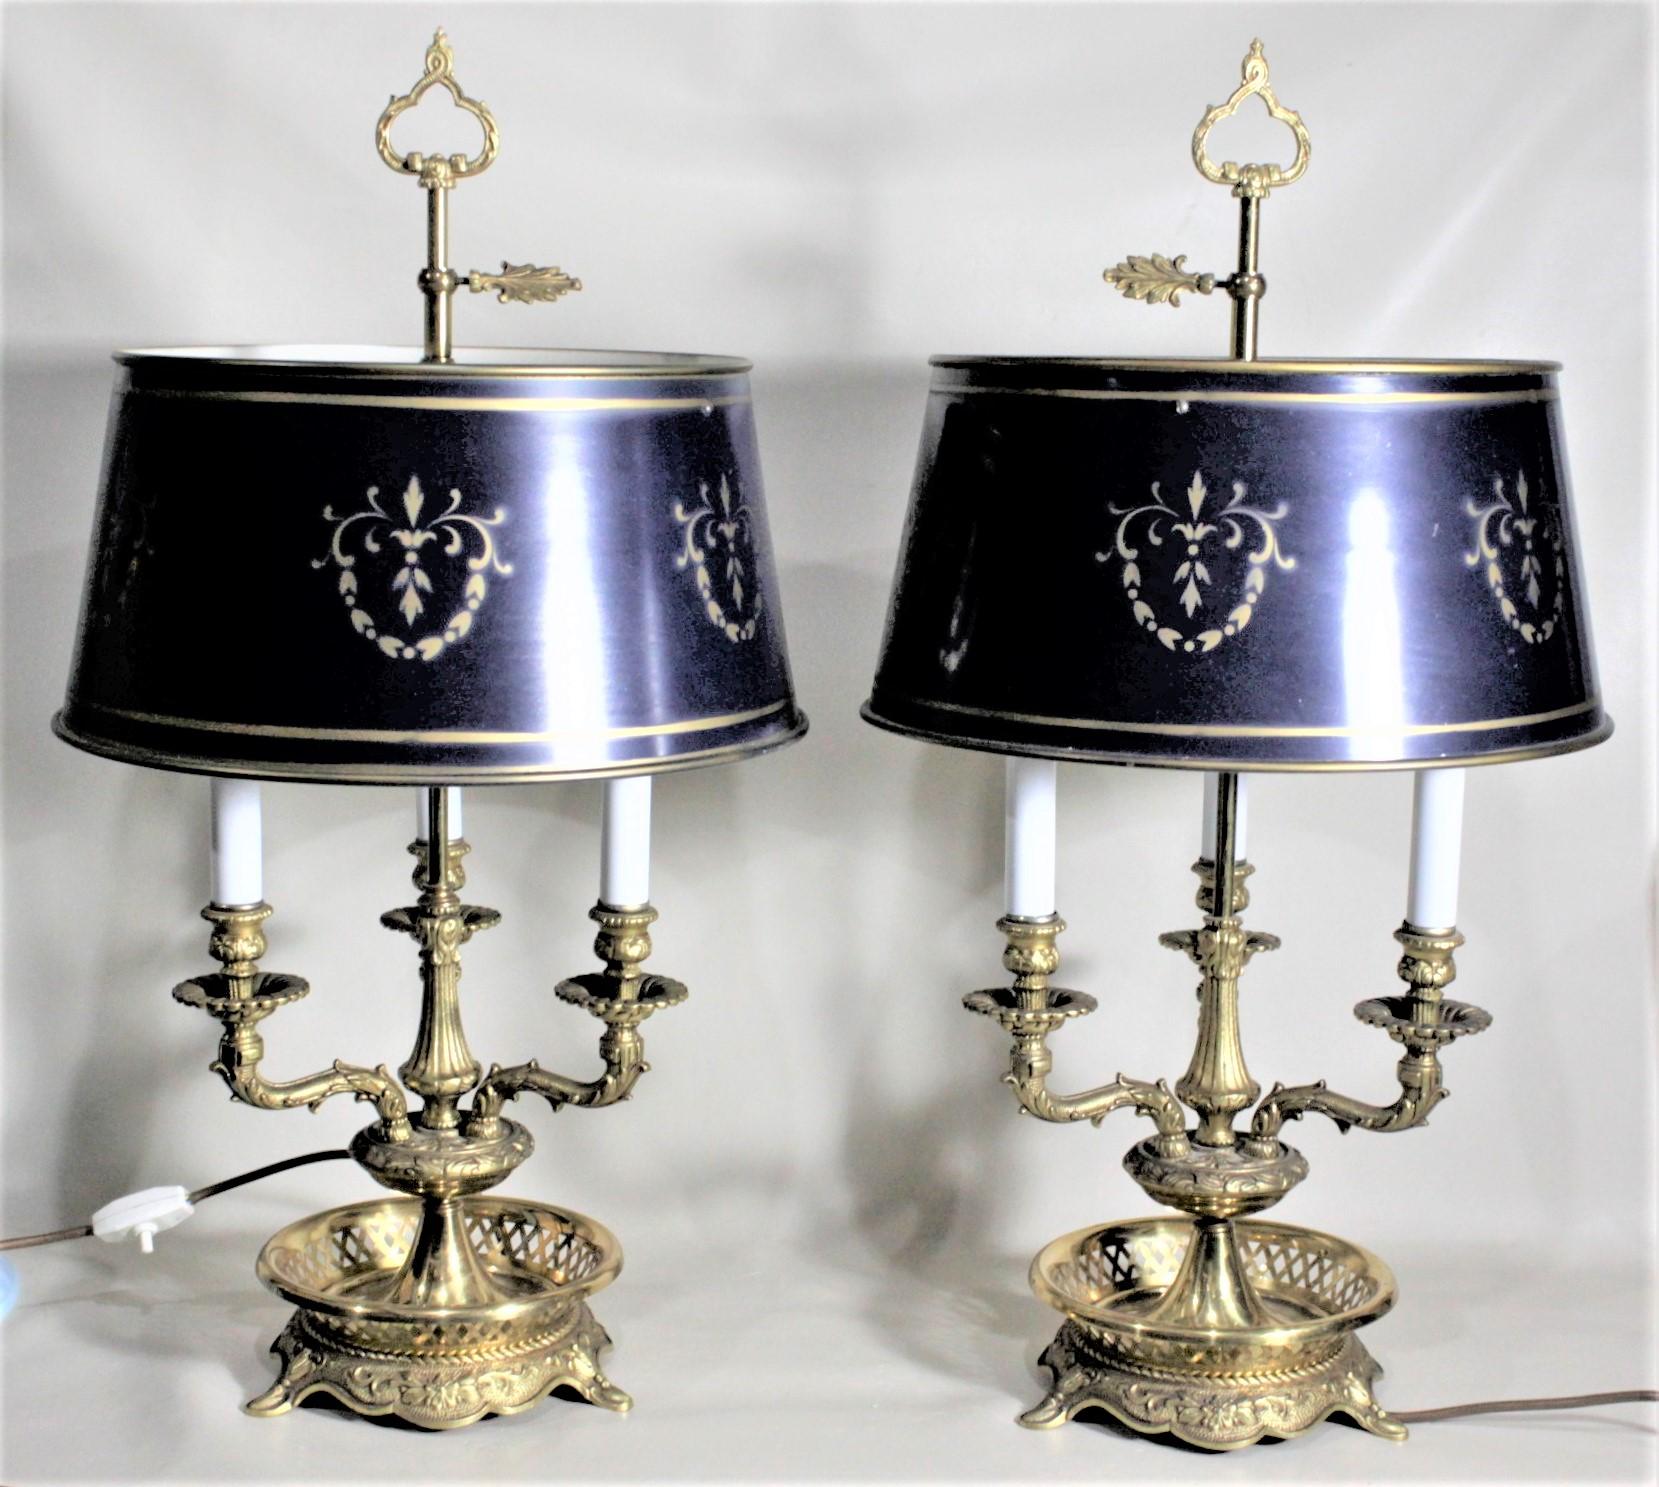 Dieses Paar kunstvoll gegossener Bouillotte-Lampen aus Messing ist unsigniert, wurde aber vermutlich um 1920 in Frankreich im französischen Landhausstil hergestellt. Die Lampen haben drei Kronleuchterarme, die schön mit Blättern und Blumen verziert